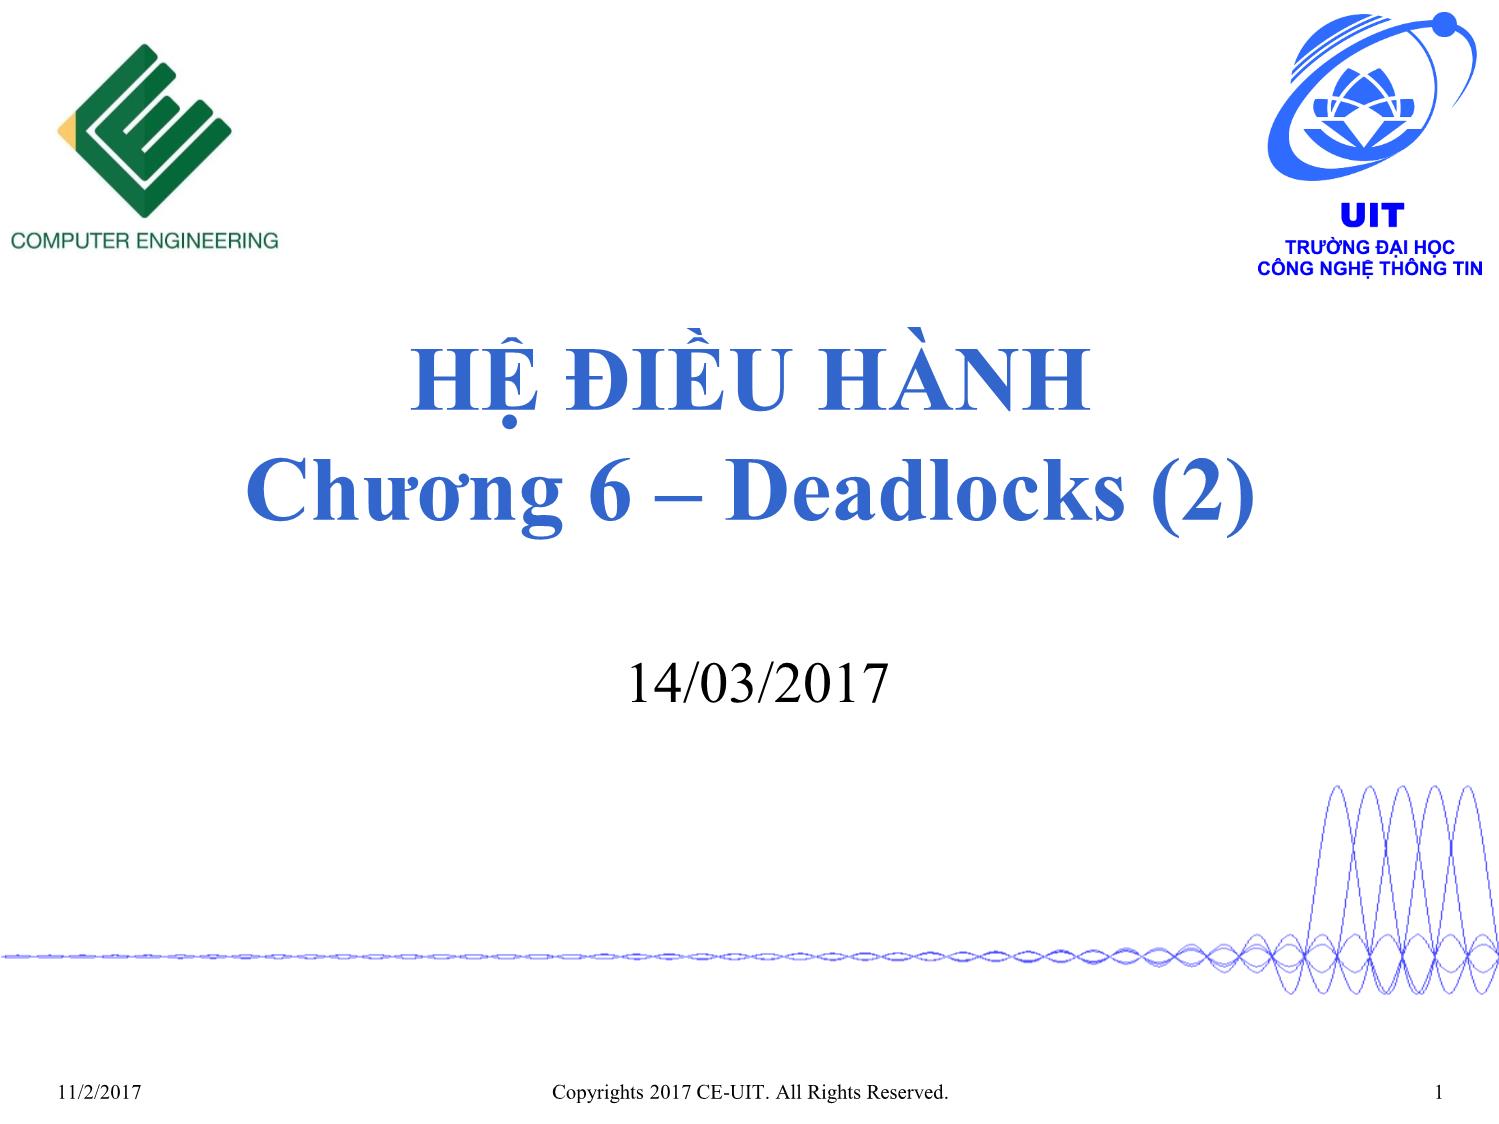 Bài giảng Hệ điều hành - Chương 6, Phần 2: Deadlocks - Phan Đình Duy trang 1